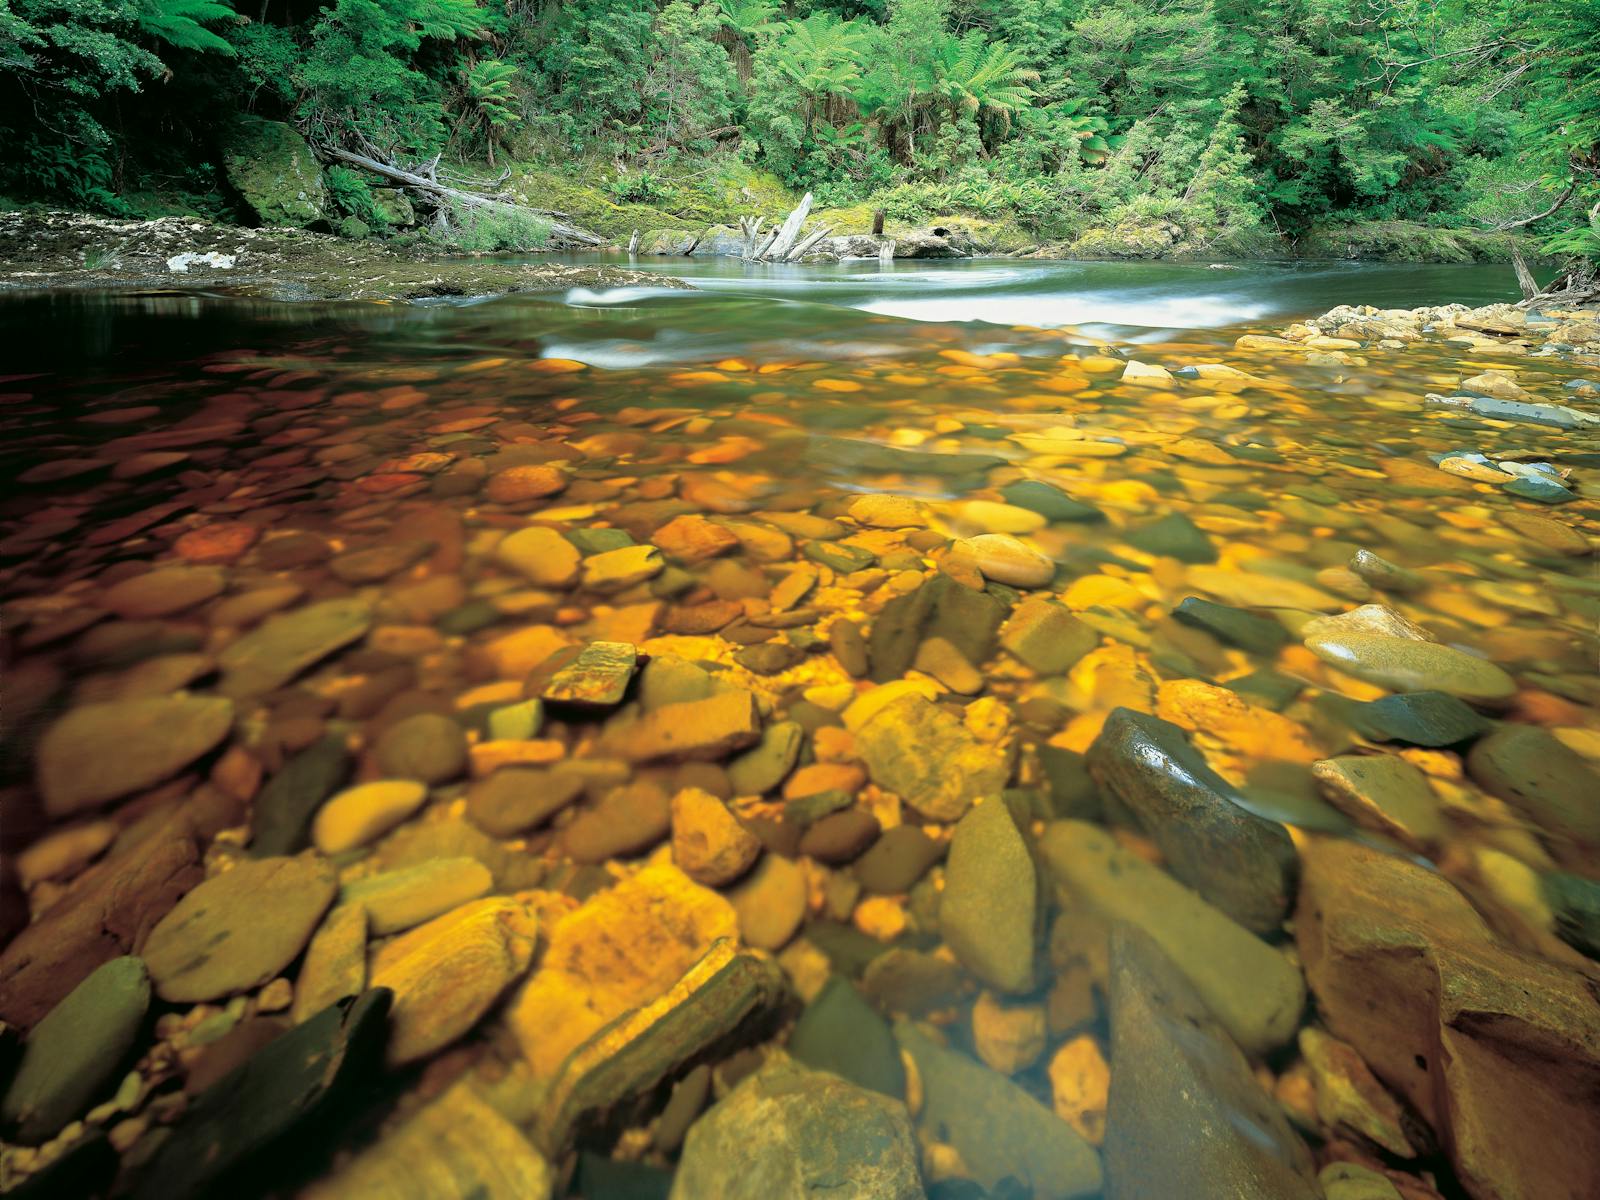 Rapid River in the takayna/Tarkine